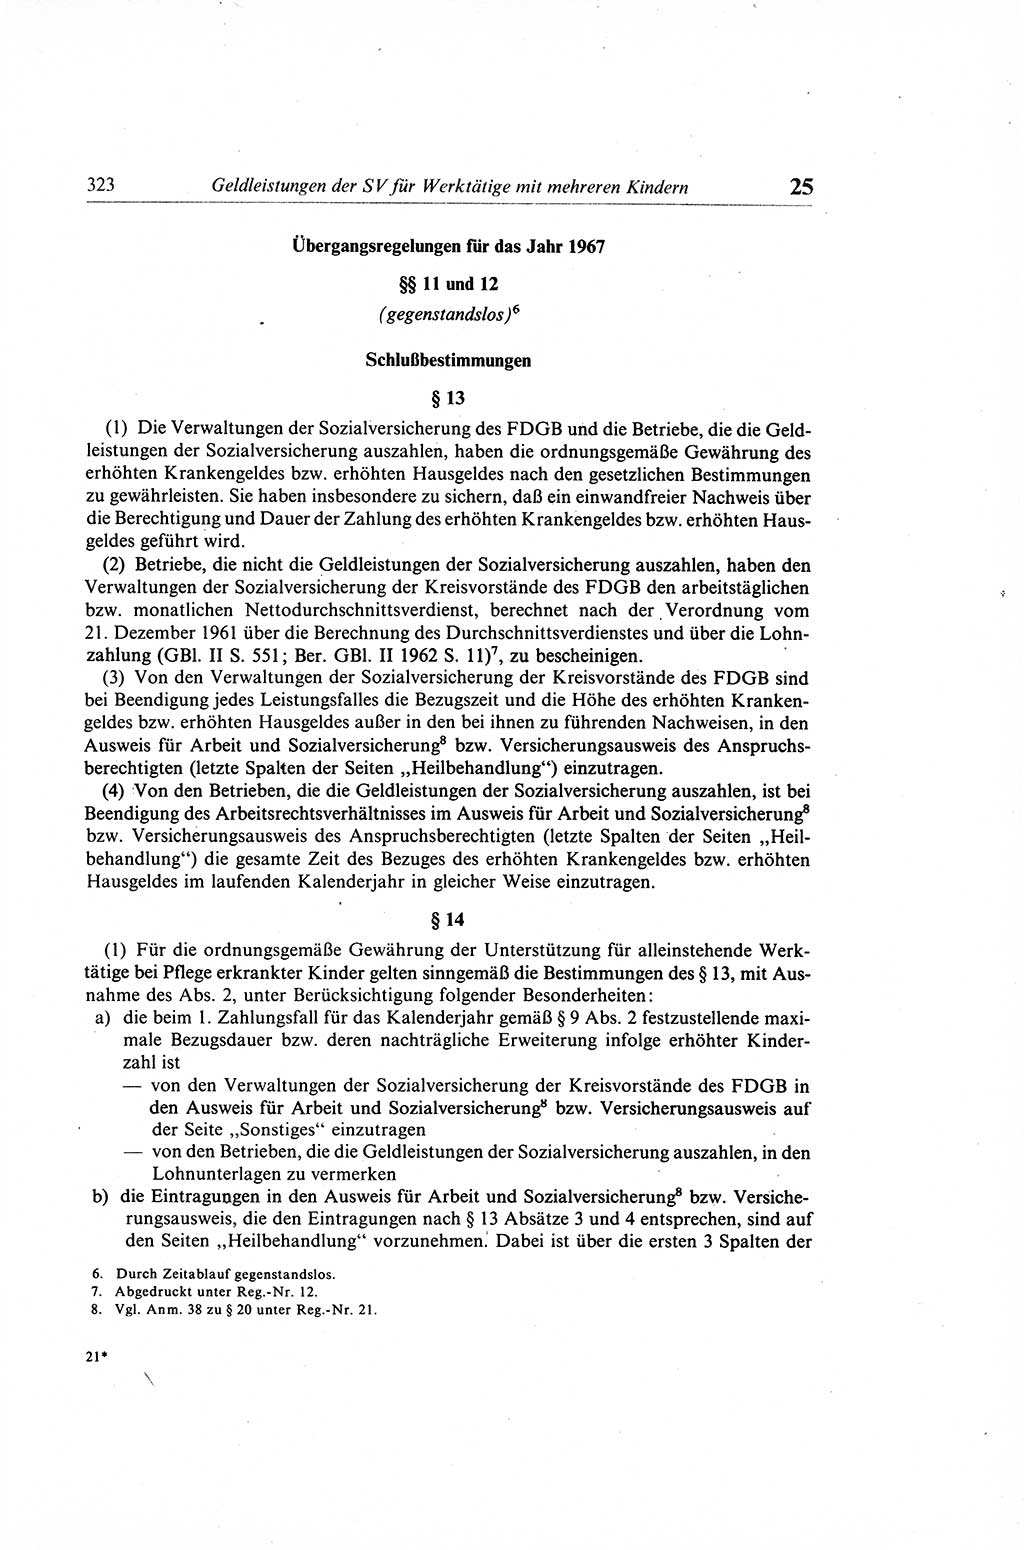 Gesetzbuch der Arbeit (GBA) und andere ausgewählte rechtliche Bestimmungen [Deutsche Demokratische Republik (DDR)] 1968, Seite 323 (GBA DDR 1968, S. 323)